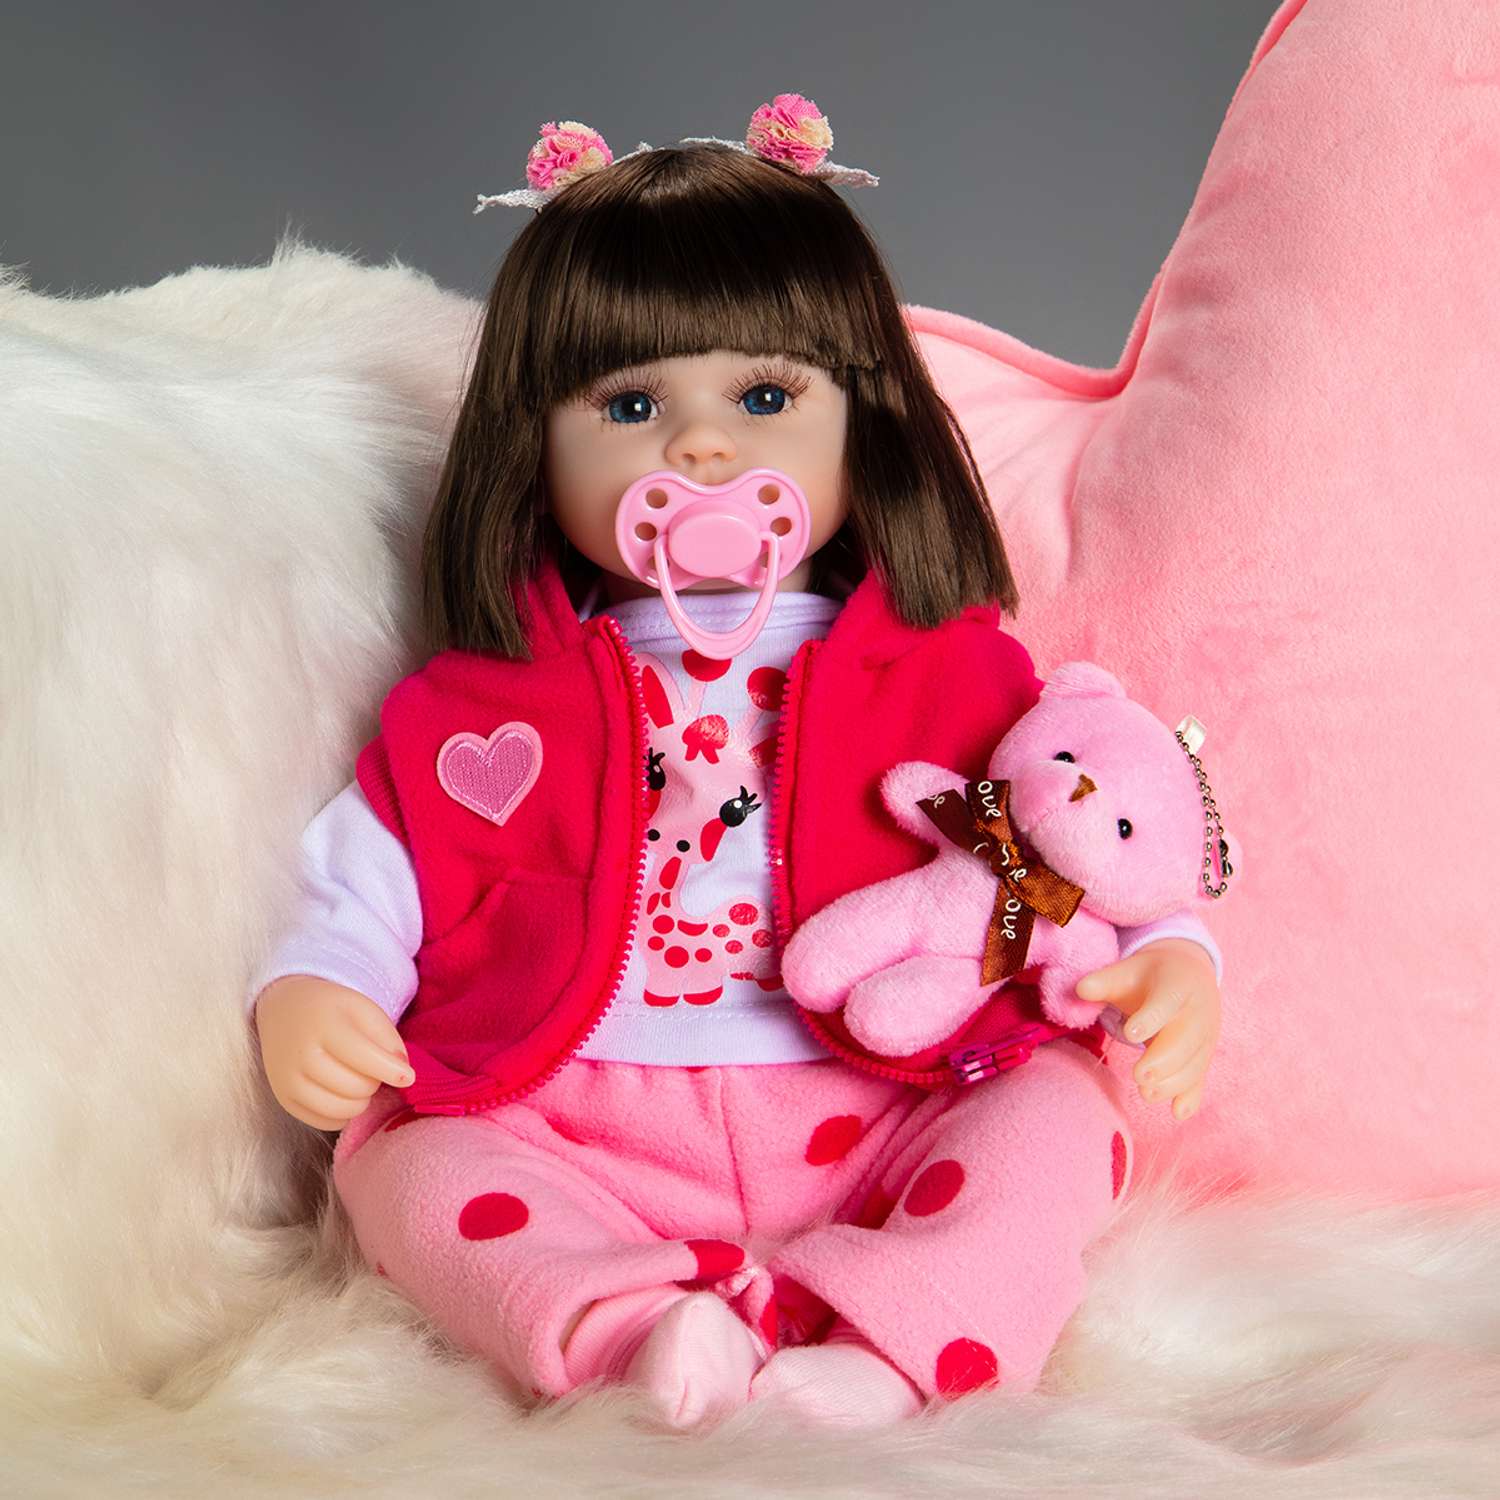 Новое лицо пупсиков - купить куклы реборн в Украине